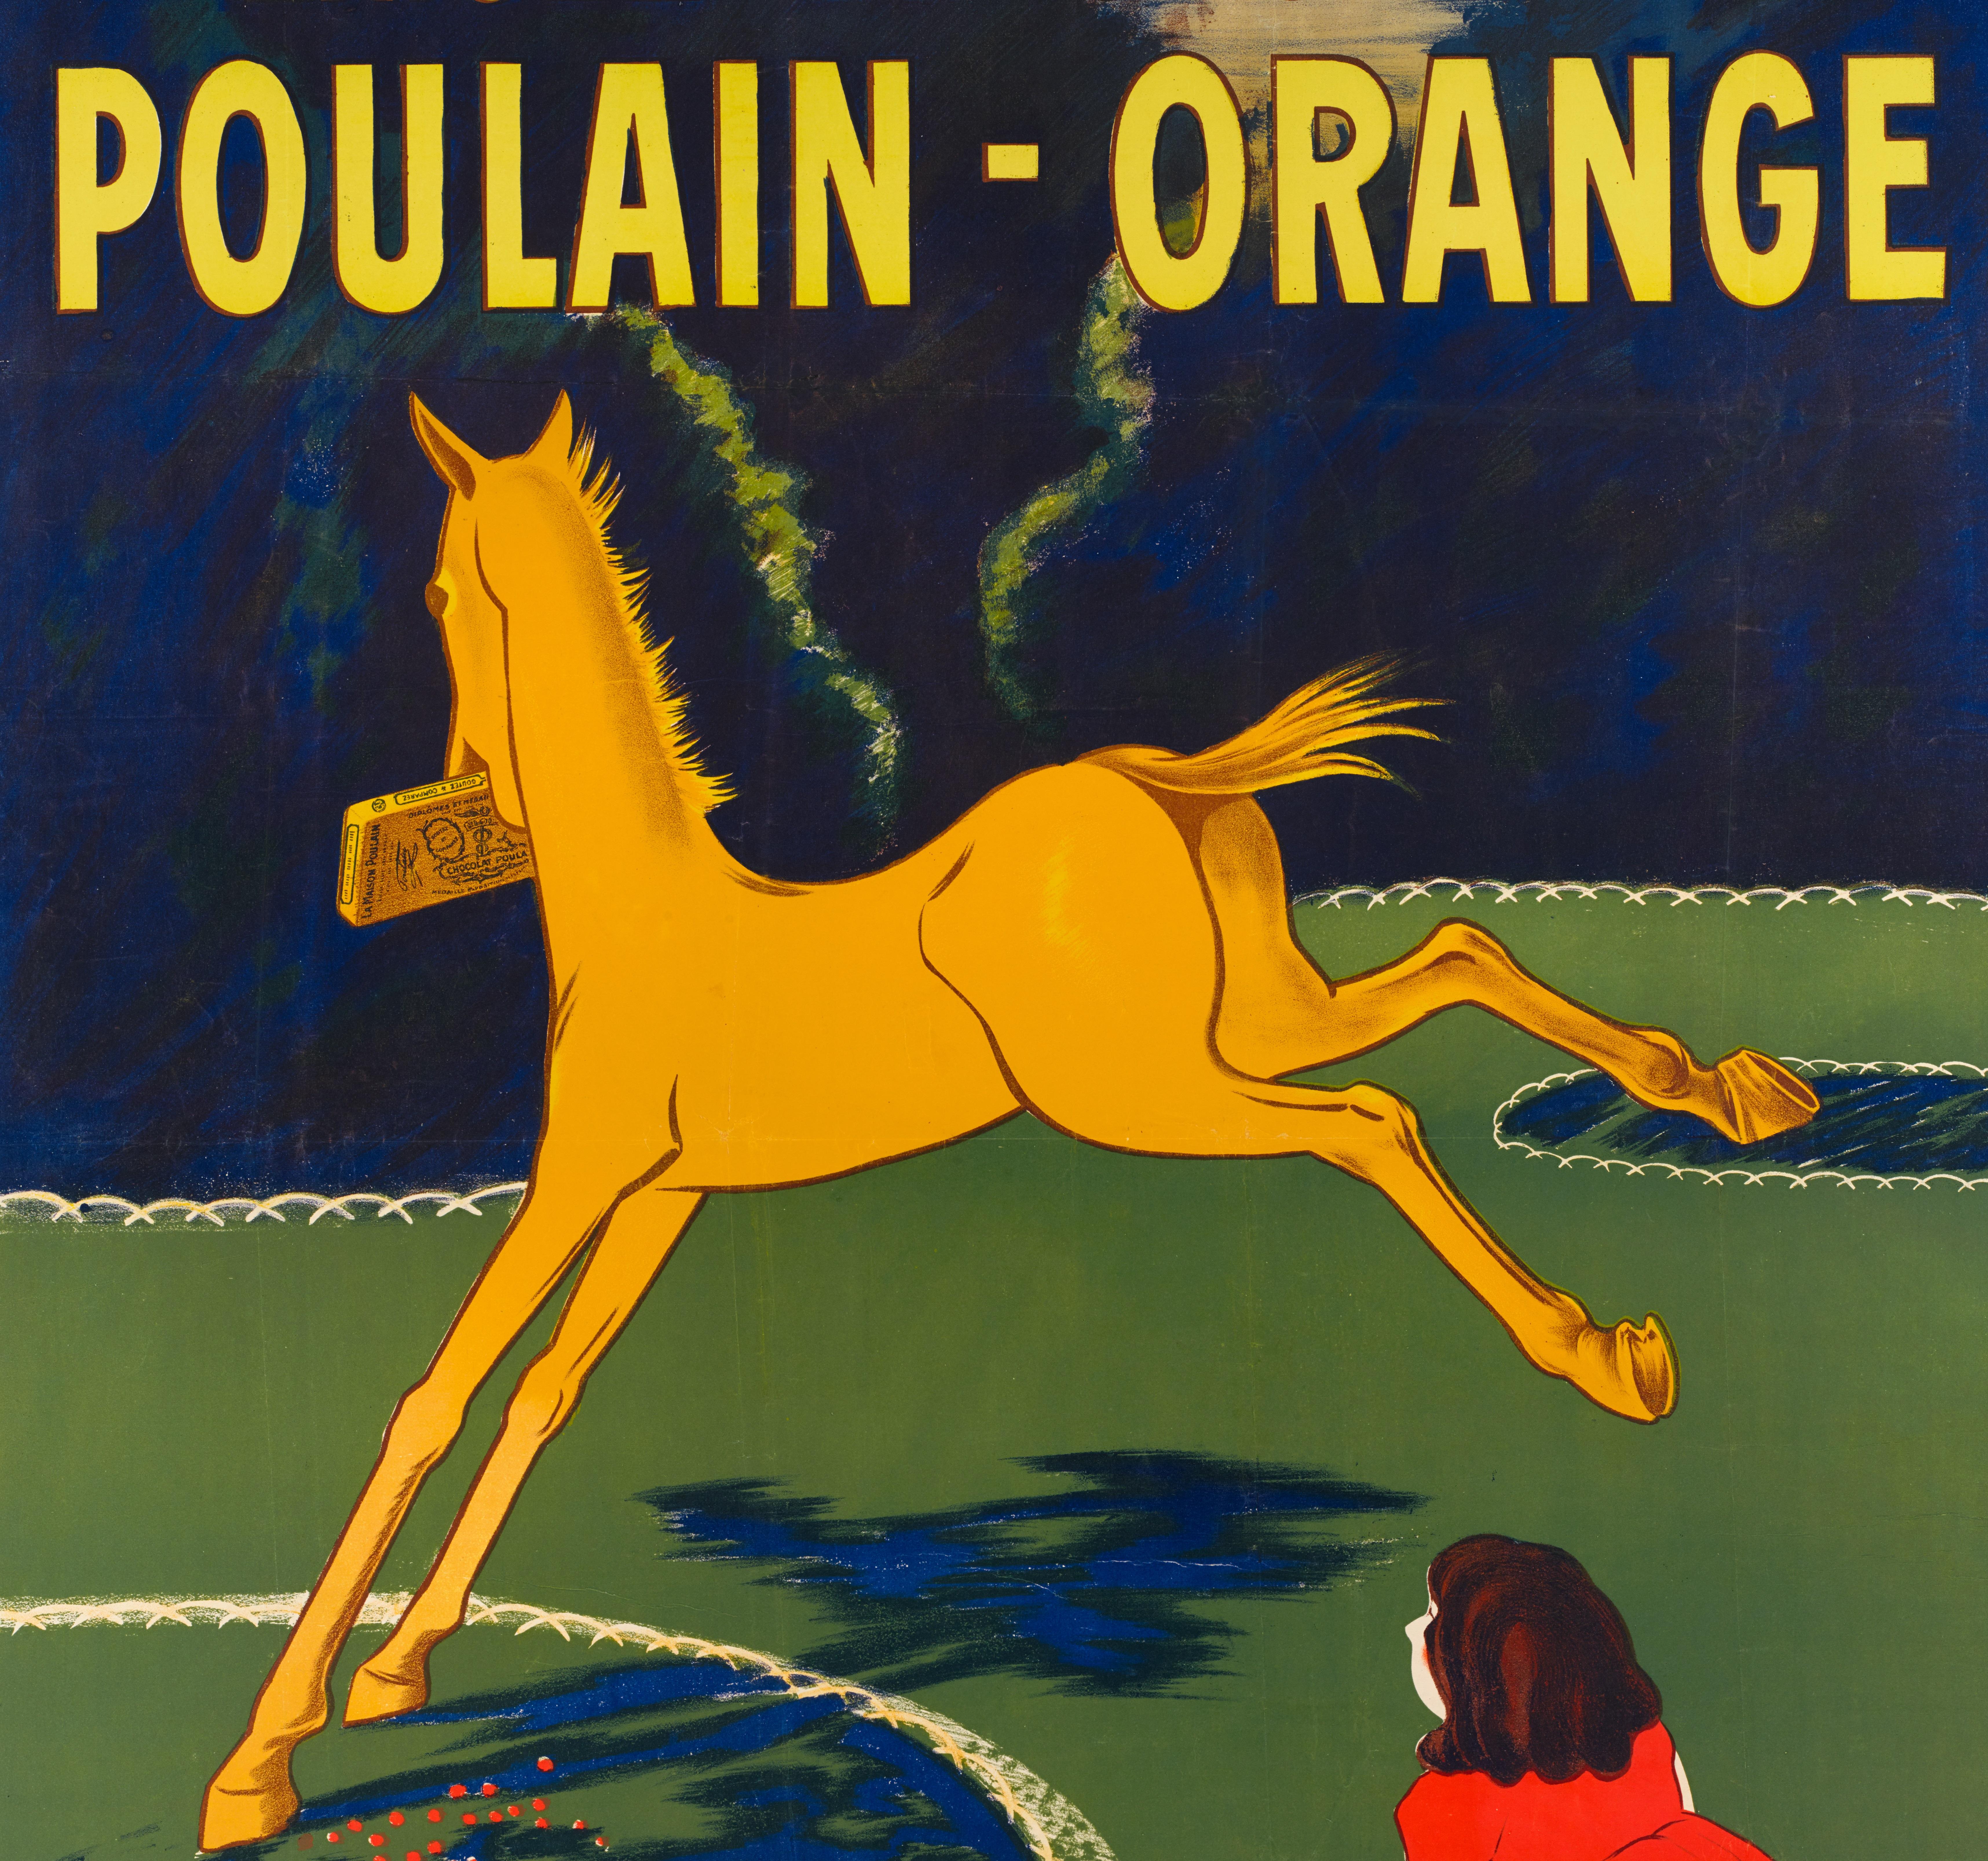 Original Vintage poster for Chocolat Poulain- Orange by Leonetto Cappiello in 1911.

Artist: Leonetto Cappiello (1875 - 1942) 
Title: Exigez le Chocolat Poulain - Orange
Date: 1911
Size: 45.9 x 61.4 in / 116.5 x 156 cm
Printer : Imp. P.